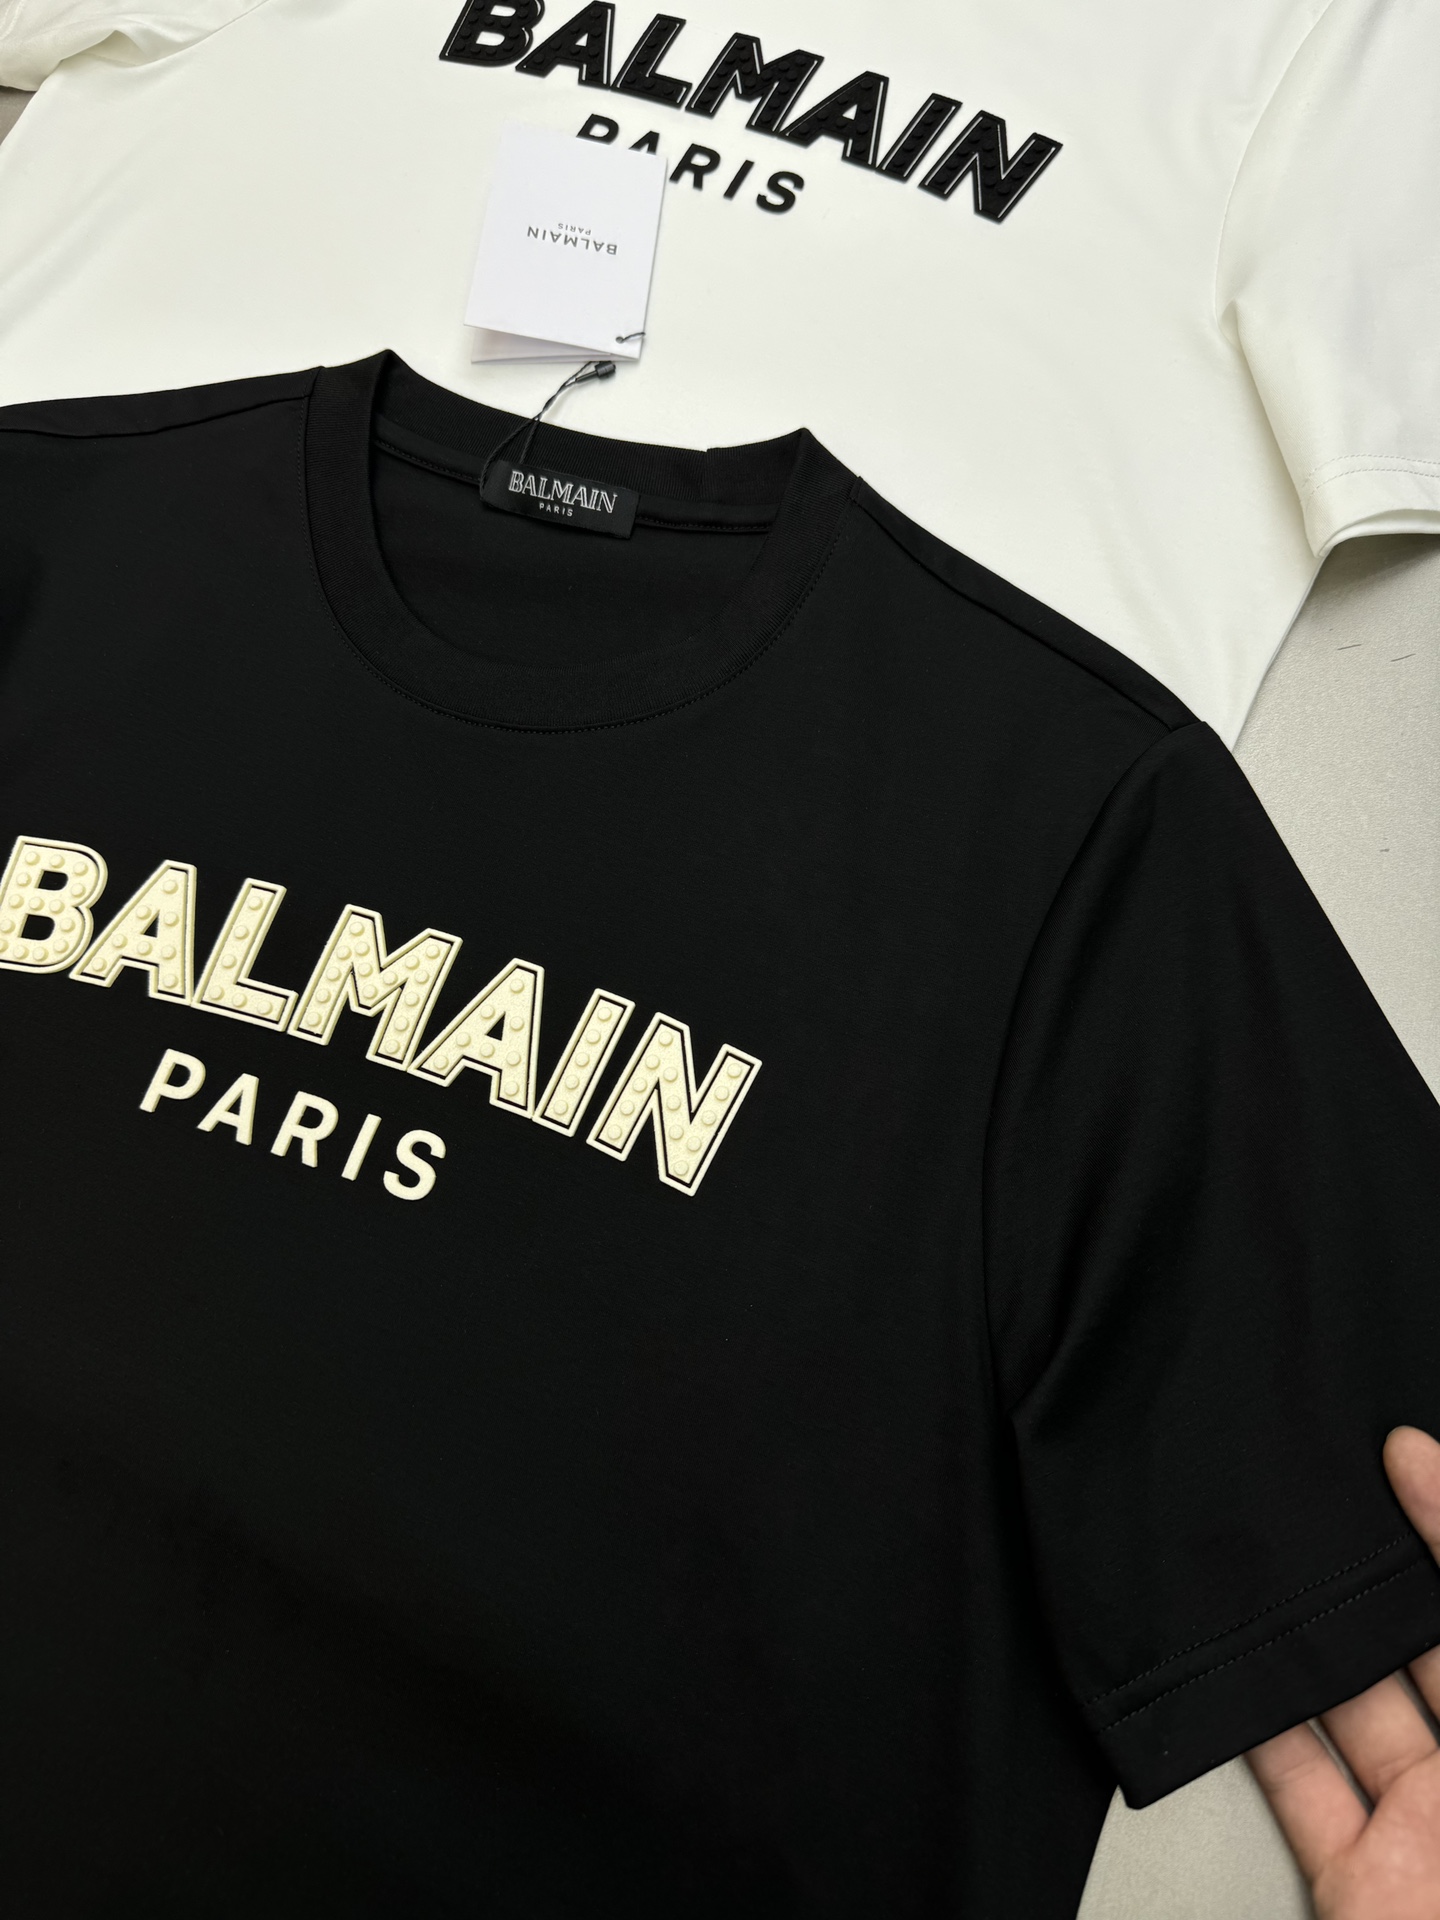 ️BALMAINI*巴尔曼24夏季新款T恤.客供优质190g丝光棉布制成机织技术.相比于普通面料更加富有